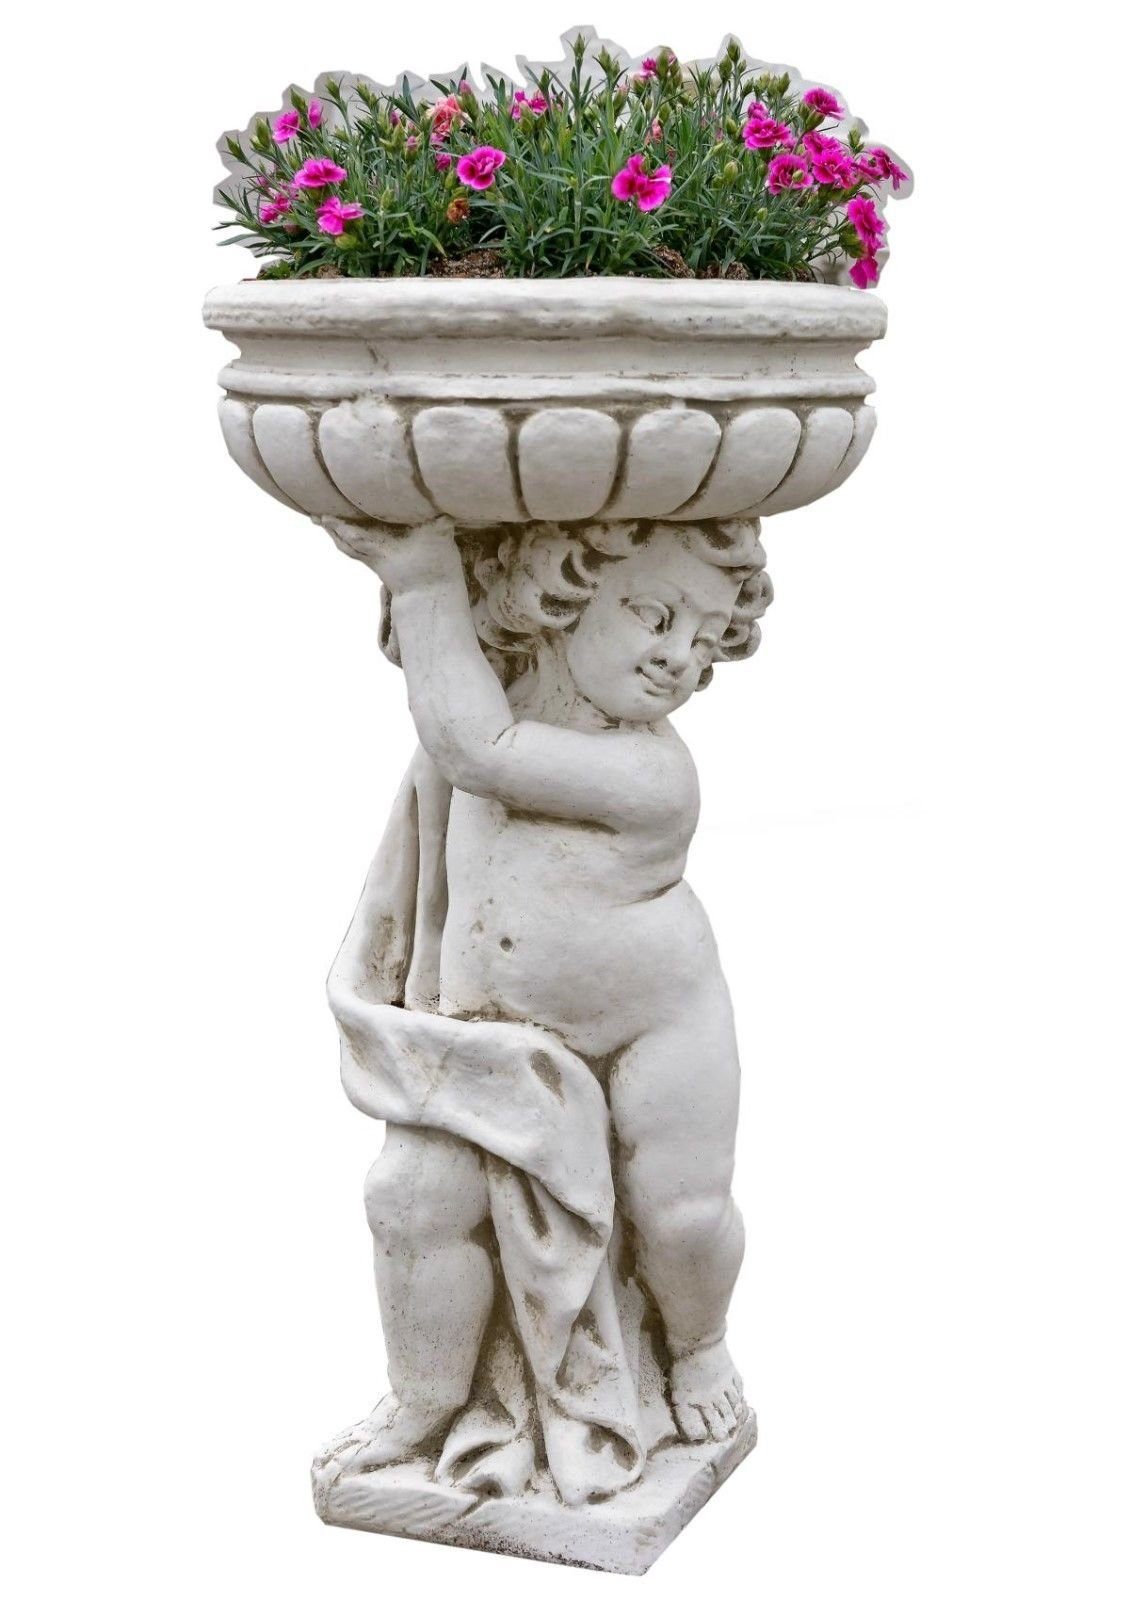 Antikes Wohndesign Pflanzschale Terrassenmöbel Gartenfigur Blumentopf Pflanzschale Pflanzkübel Blumens